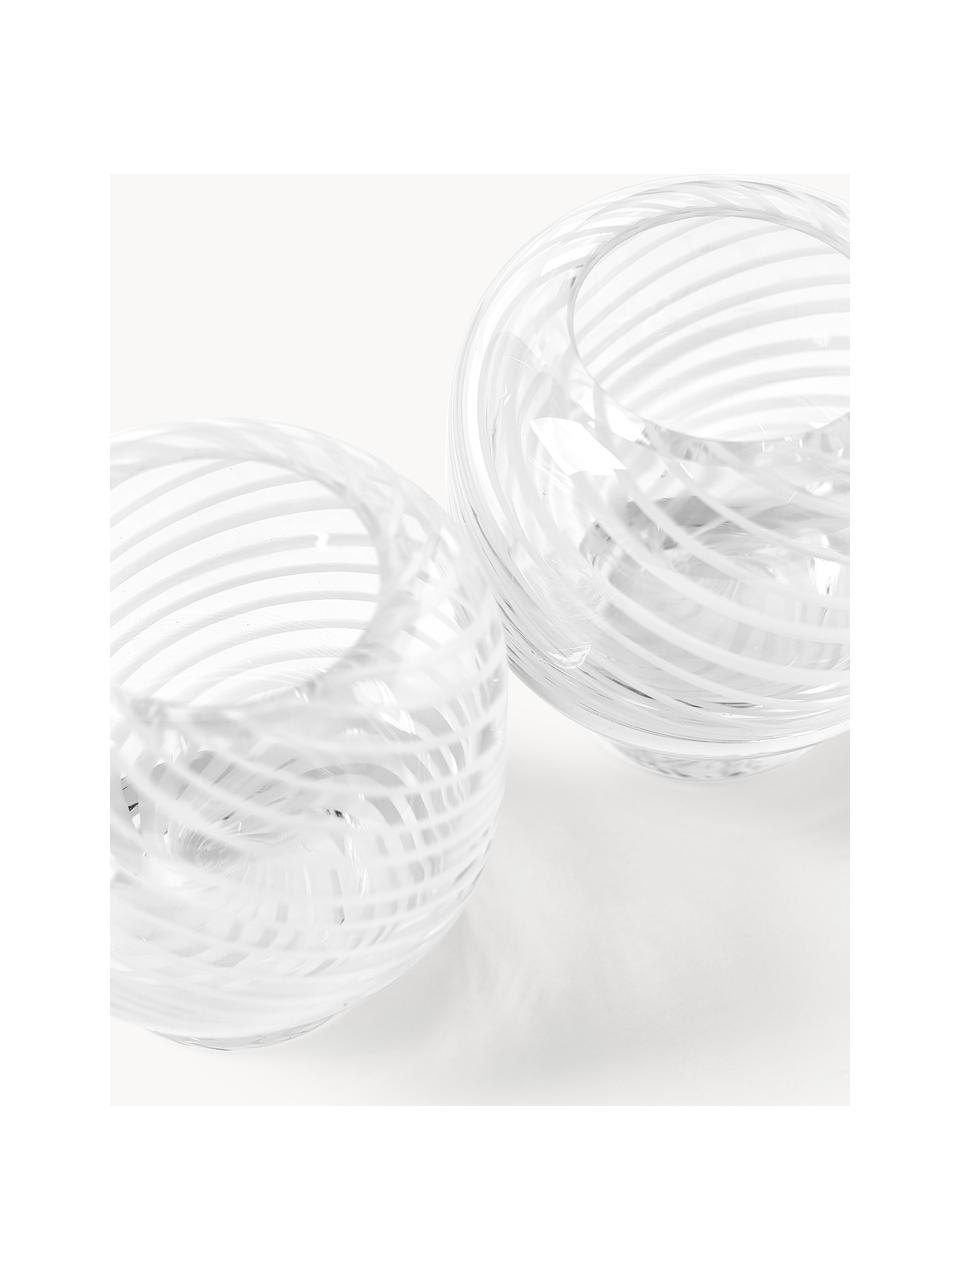 Mundgeblasene Teelichthalter Suze, 2 Stück, Glas, mundgeblasen, Weiß, transparent, Ø 9 x H 9 cm